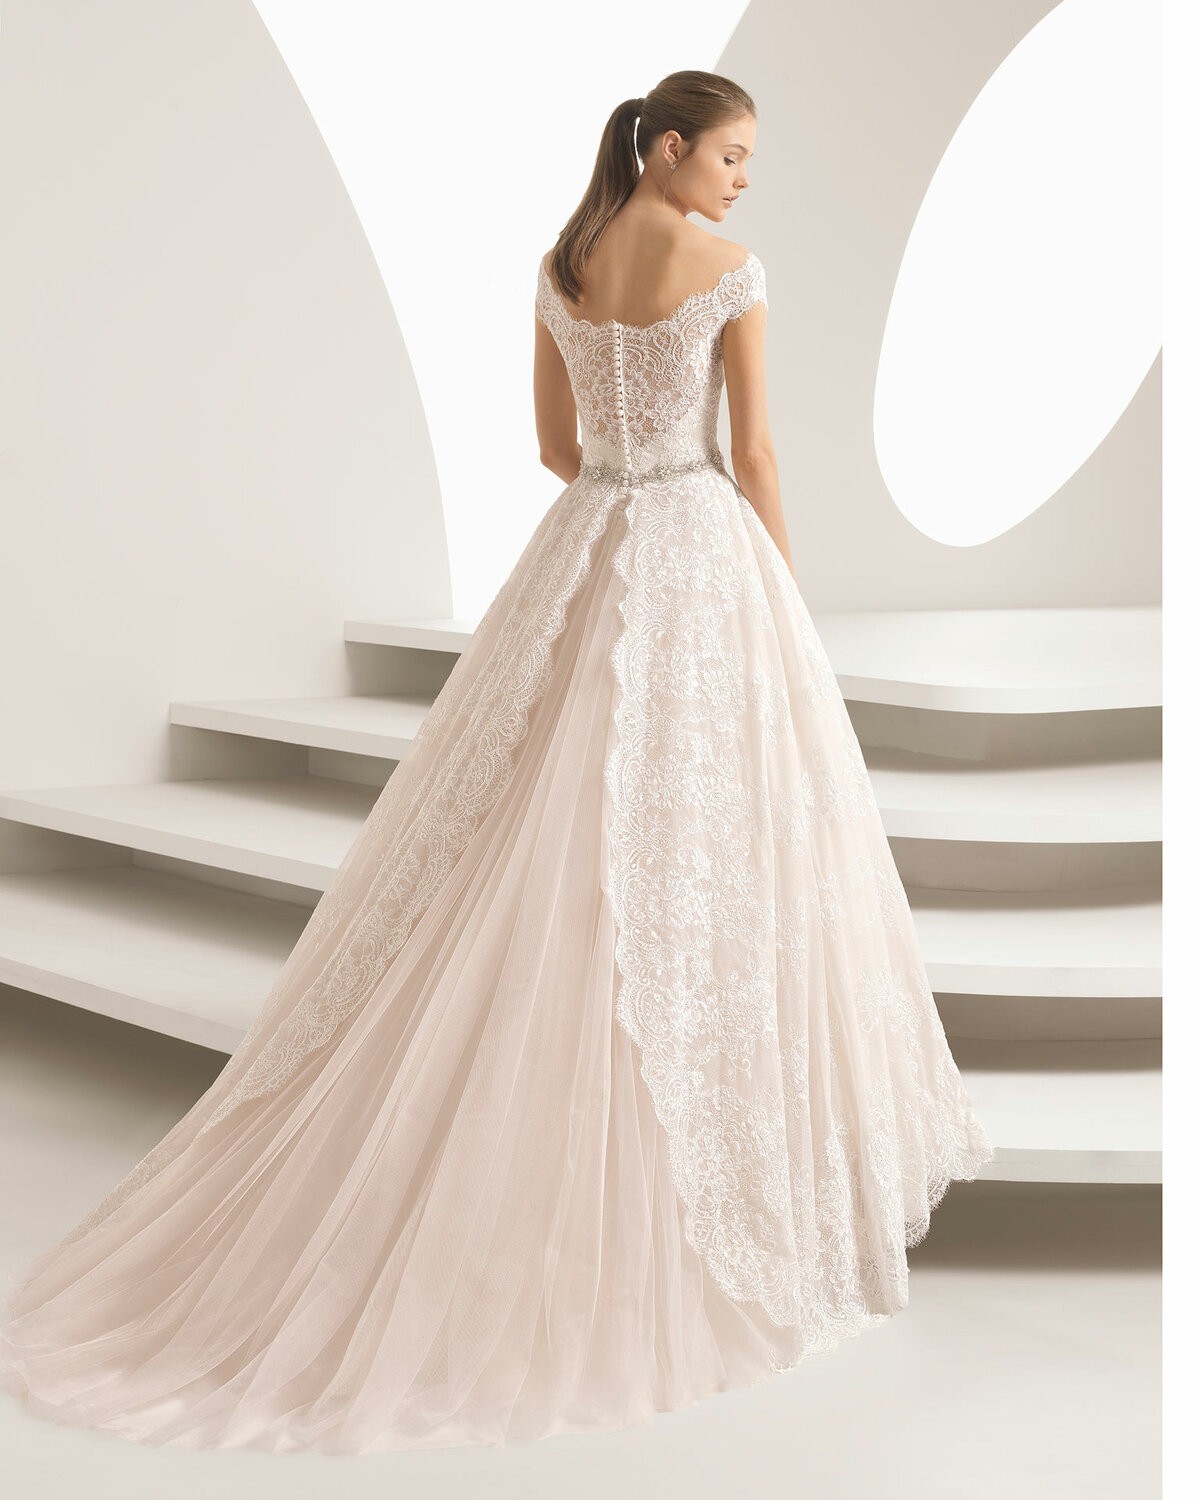 AMARILE - abito da sposa collezione 2020 - Rosa Clarà